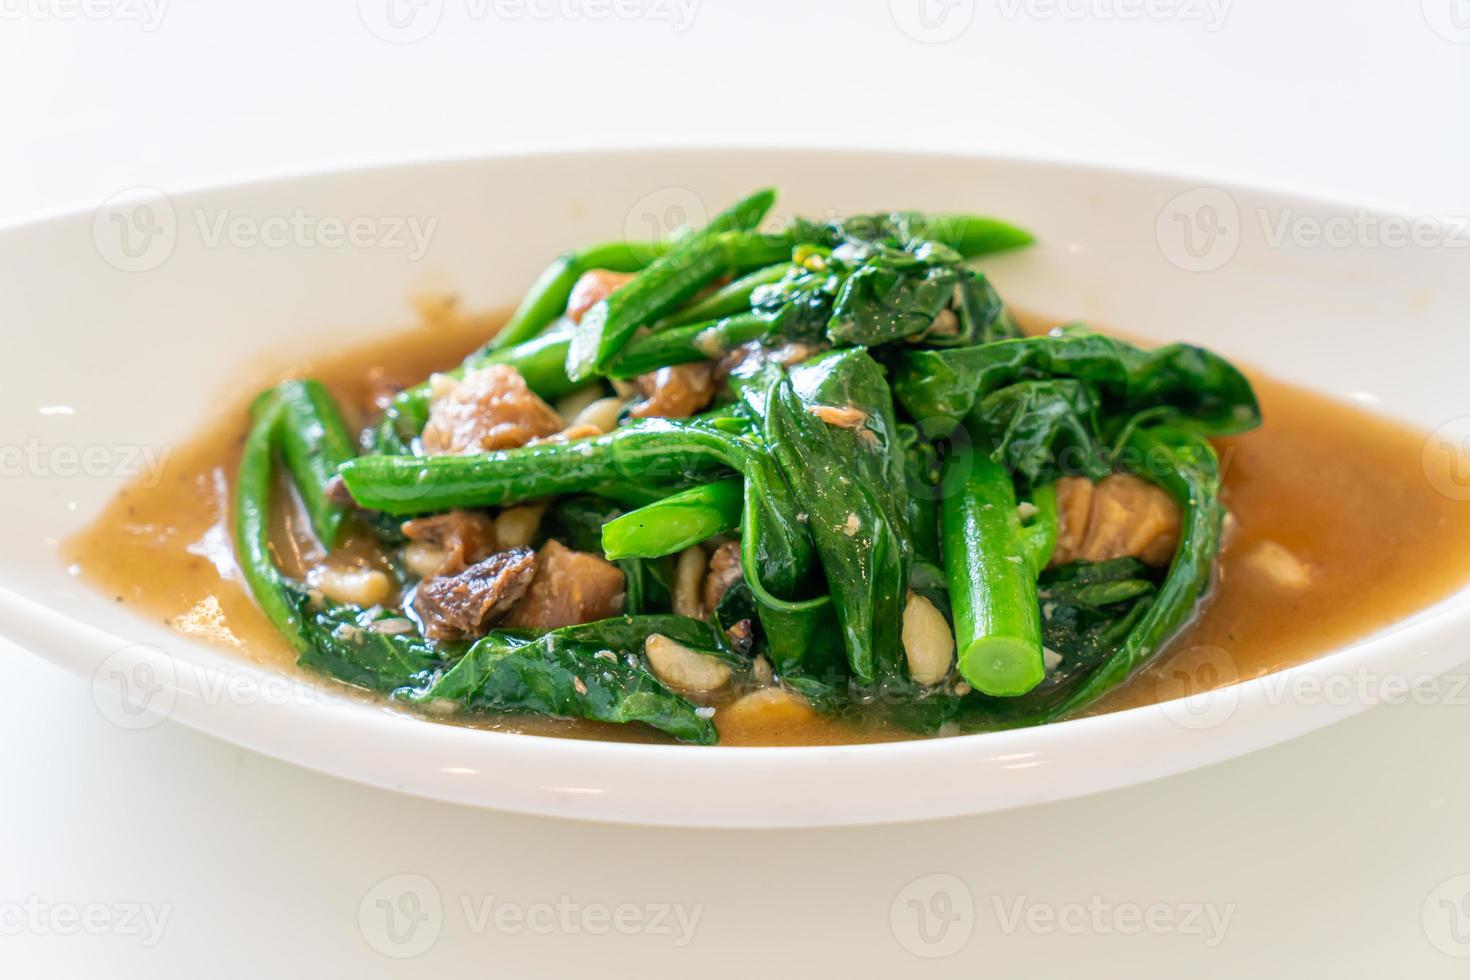 pesce salato saltato in padella con cavolo cinese - stile asiatico foto